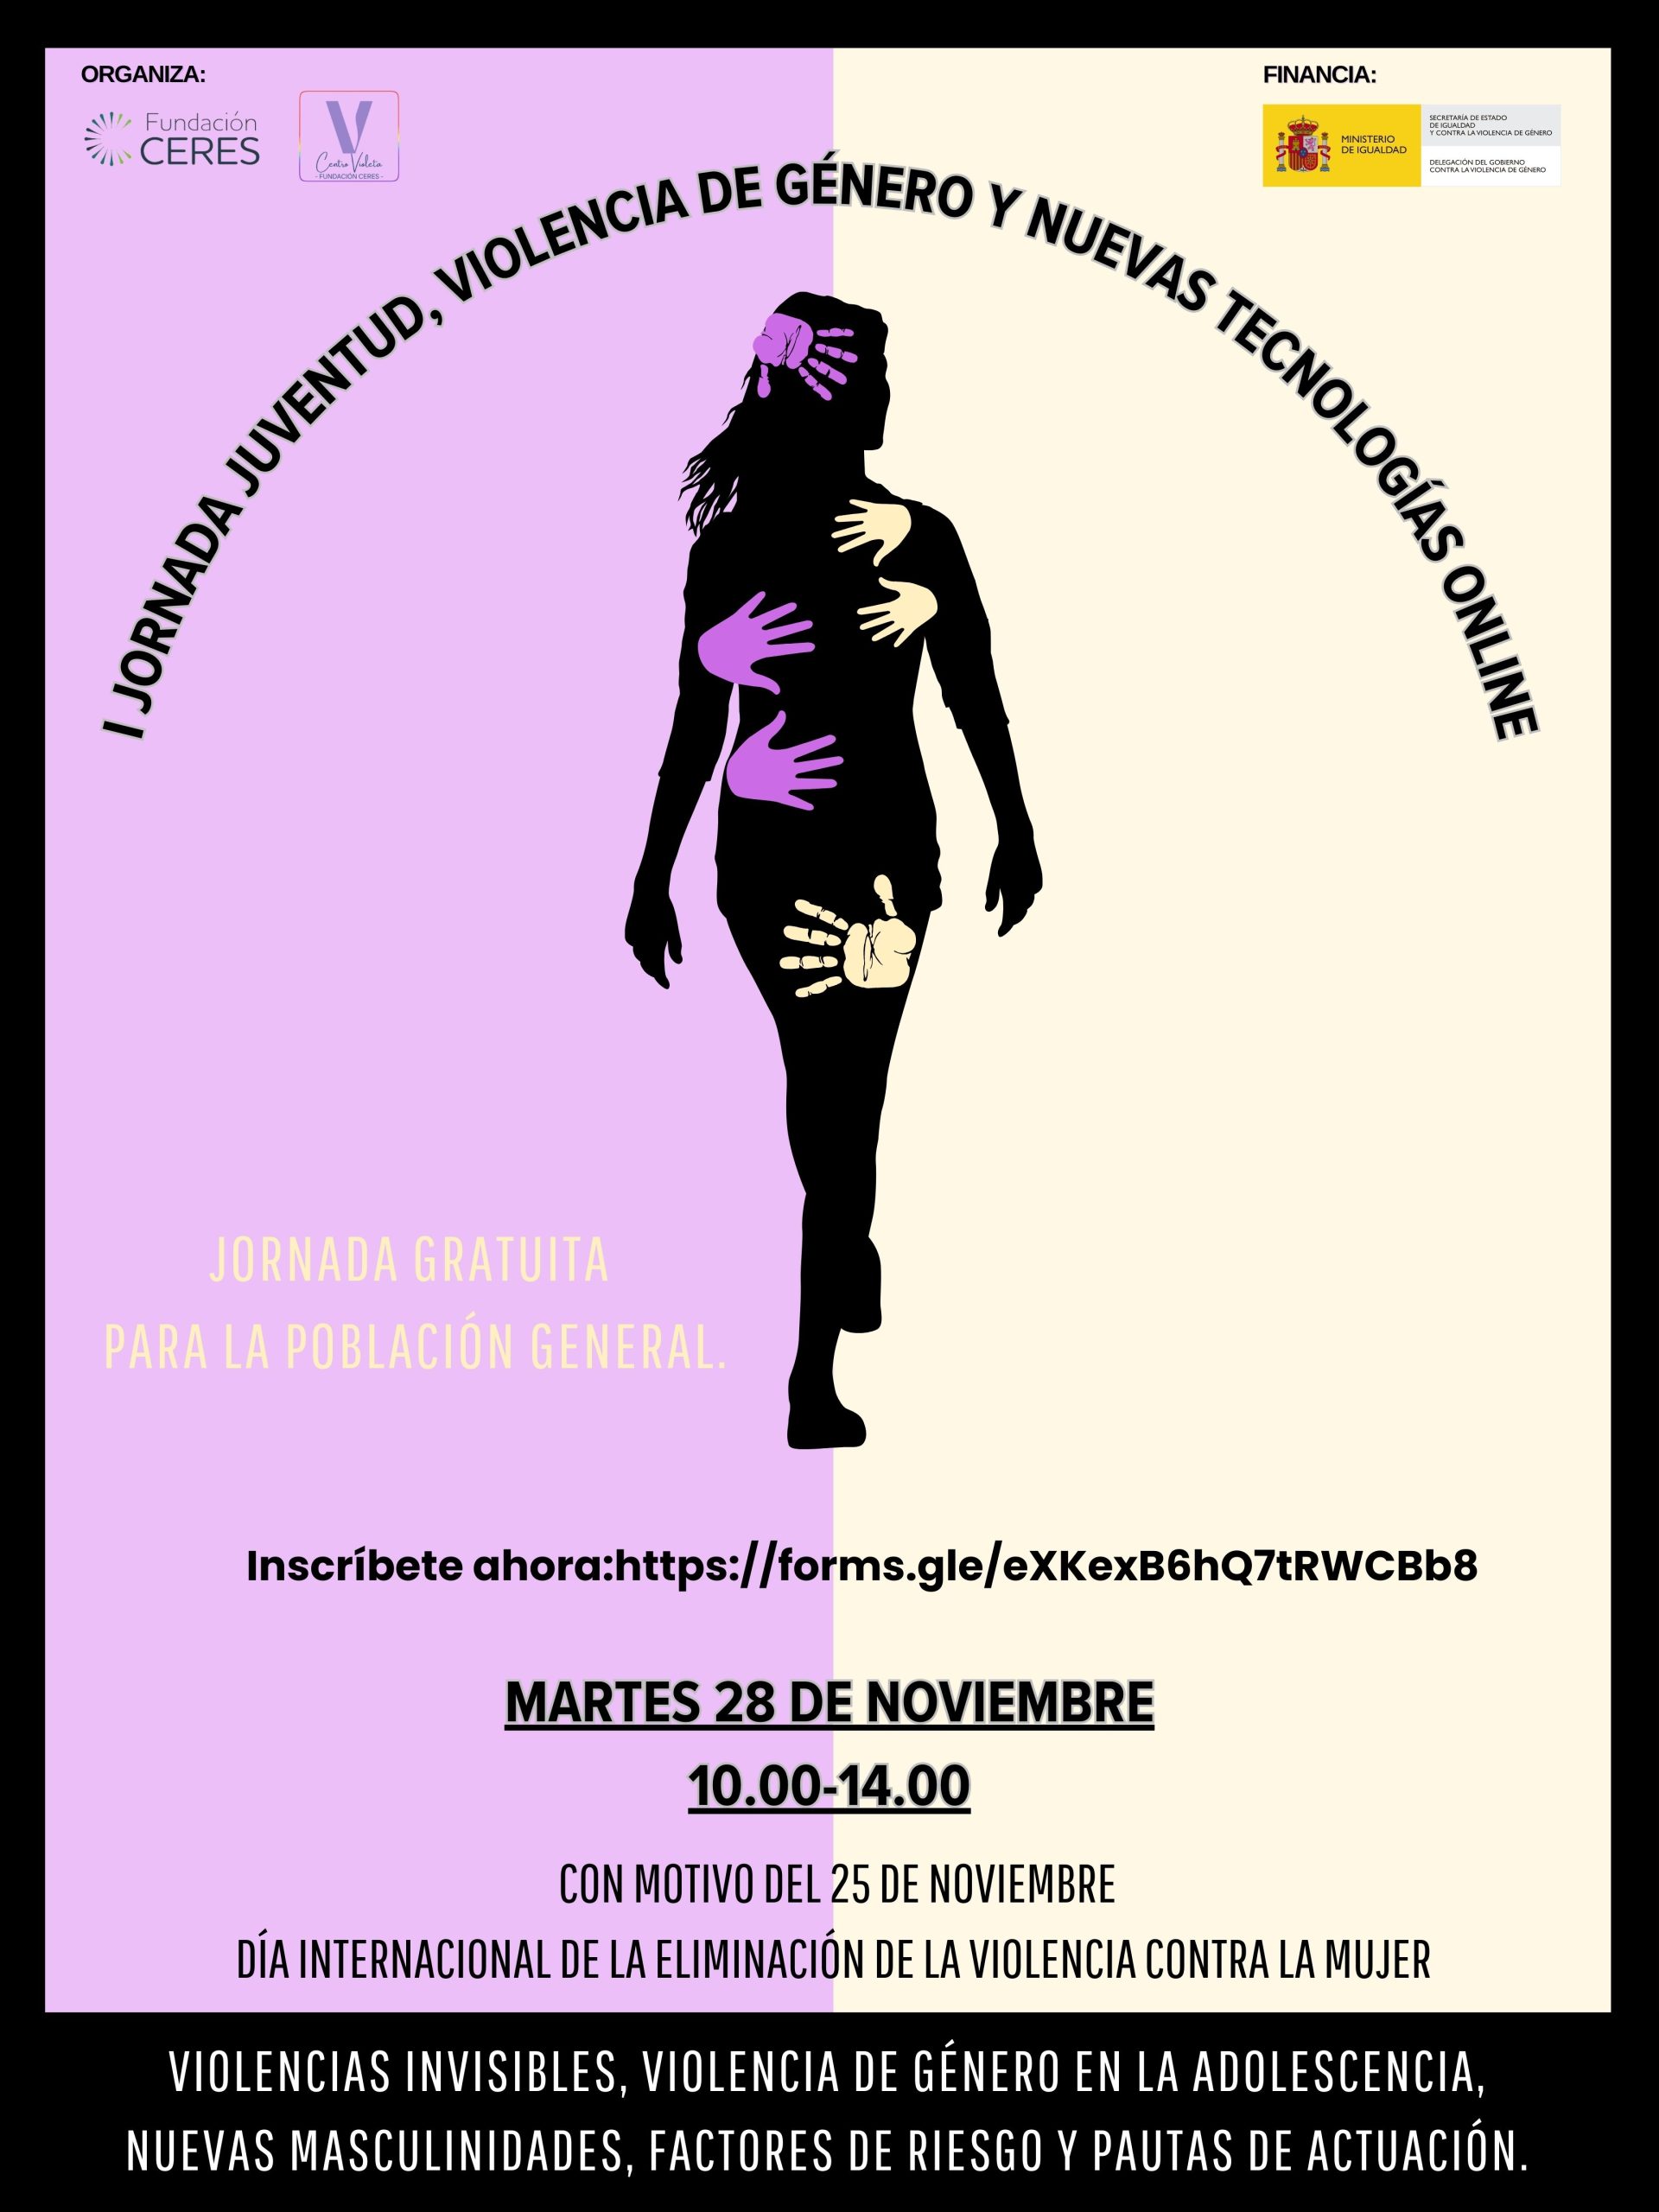 Fundación CERES presenta la I Jornada “Juventud, Violencia de Género y Nuevas Tecnologías Online”, el próximo 28 de noviembre